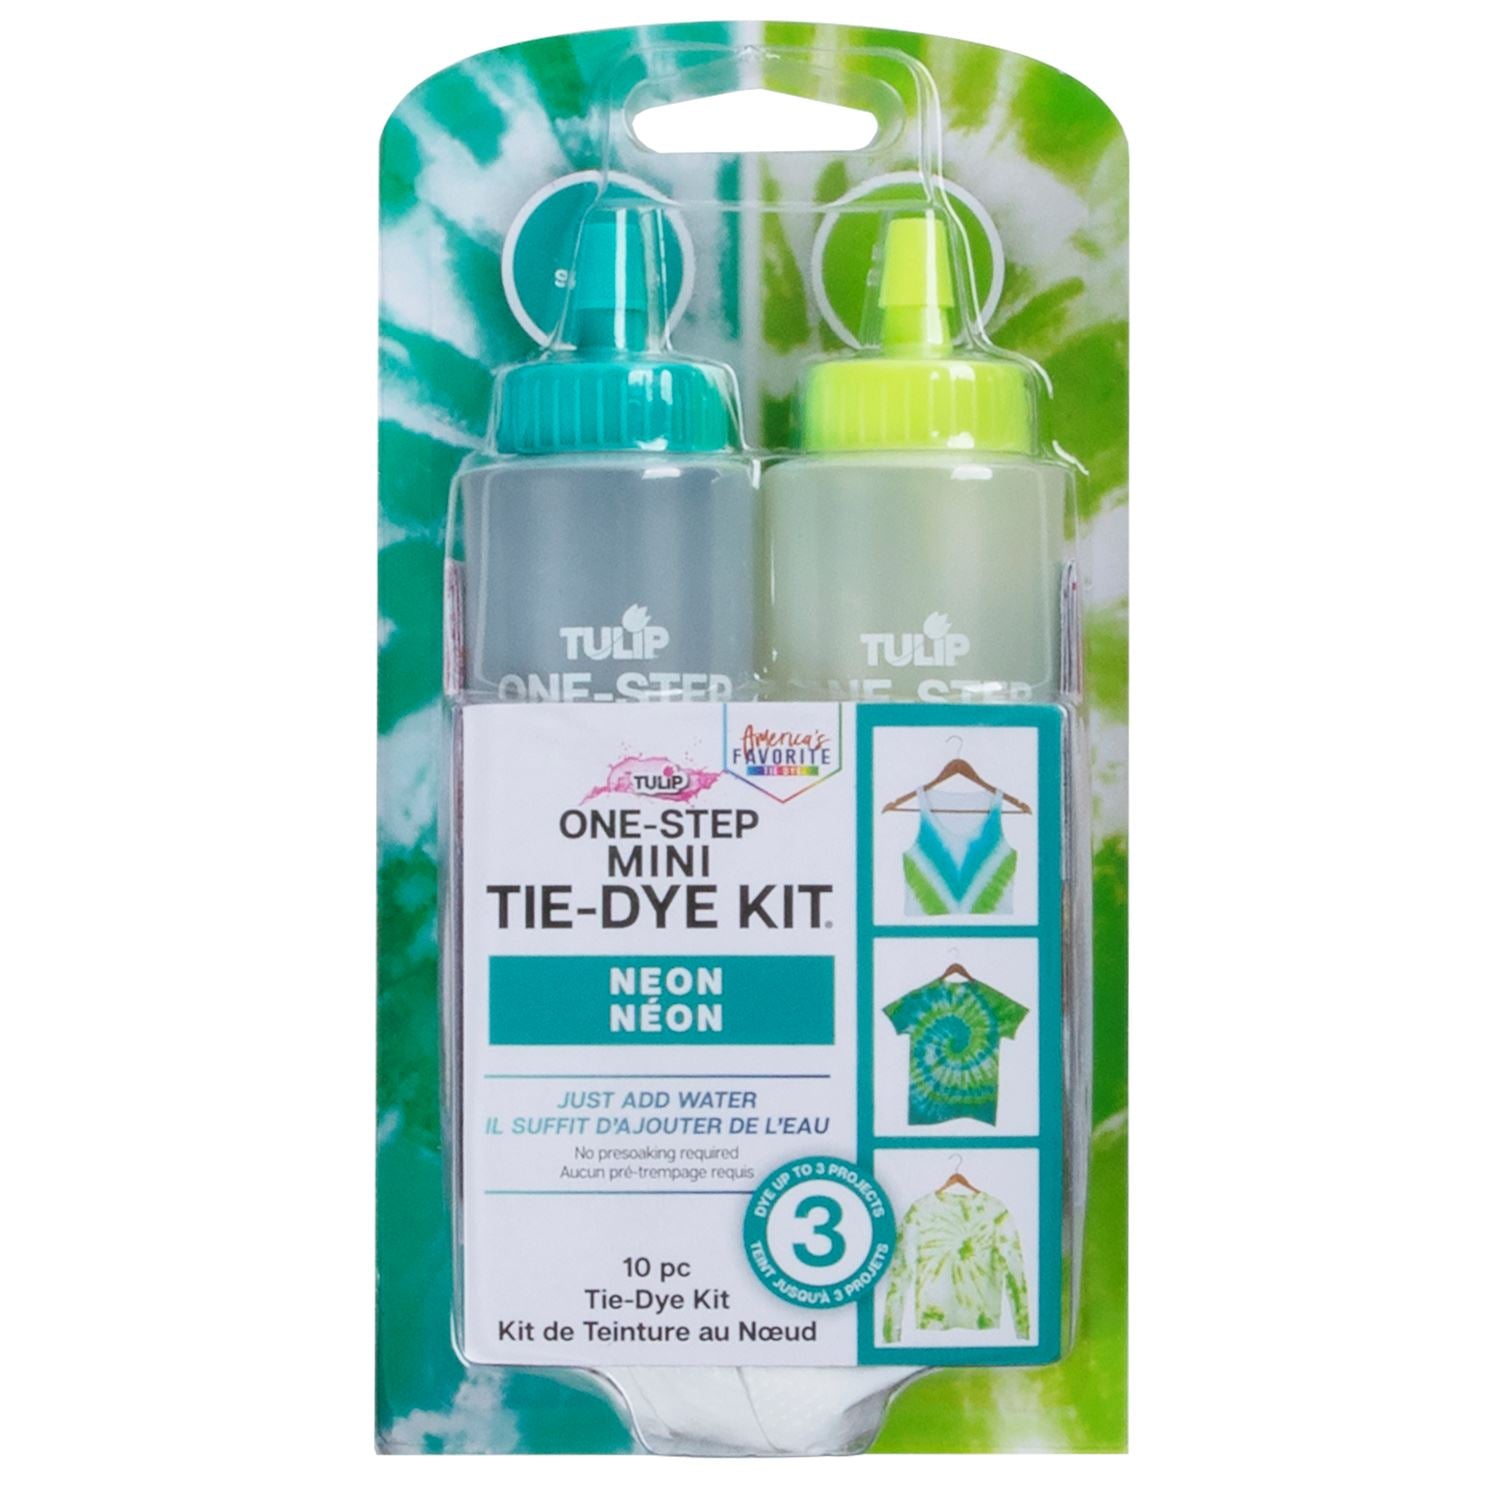 Tulip one-step tie dye • Two-minute tie dye kit Carnival 12pcs